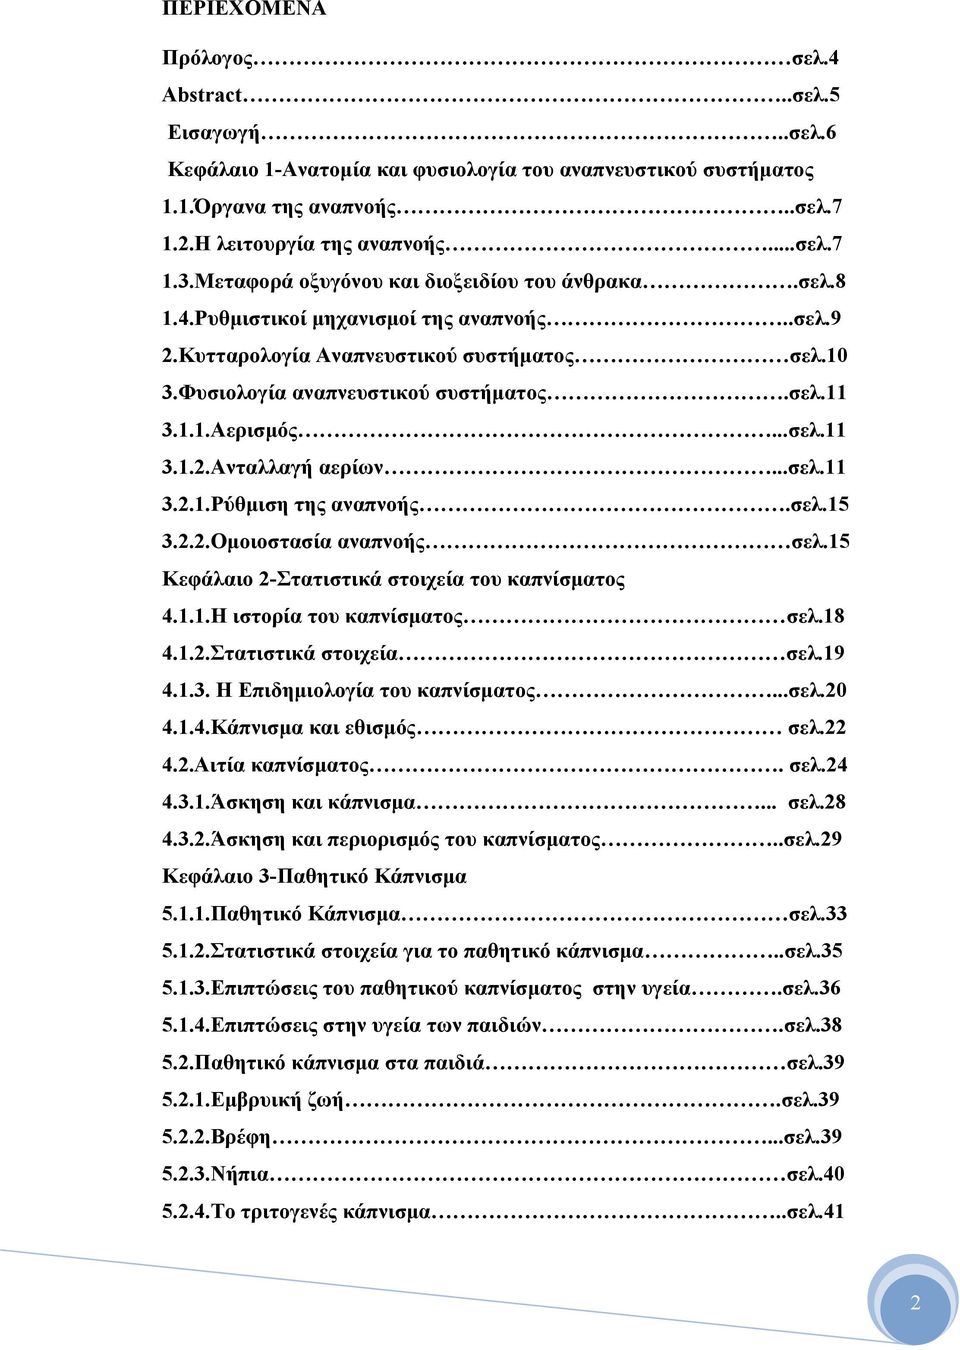 ..σελ.11 3.1.2.Ανταλλαγή αερίων...σελ.11 3.2.1.Ρύθμιση της αναπνοής.σελ.15 3.2.2.Ομοιοστασία αναπνοής σελ.15 Κεφάλαιο 2-Στατιστικά στοιχεία του καπνίσματος 4.1.1.Η ιστορία του καπνίσματος σελ.18 4.1.2.Στατιστικά στοιχεία σελ.